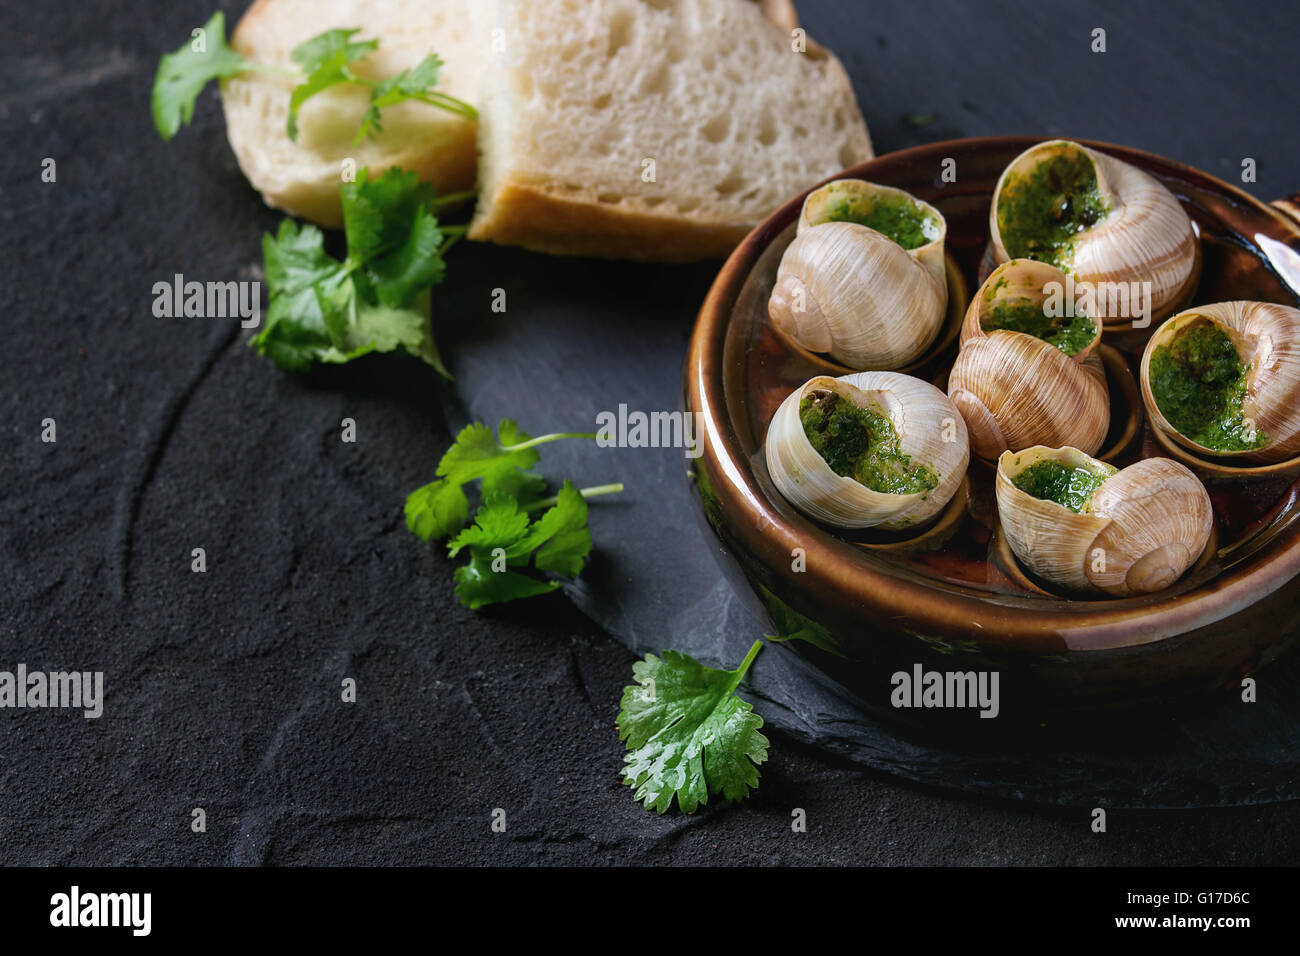 Escargots de Bourgogne - Schnecken mit Kräuter-butter, Gourmet-Gericht, in traditionellen keramischen Pfanne mit Petersilie und Brot auf Stein Lamelle Stockfoto